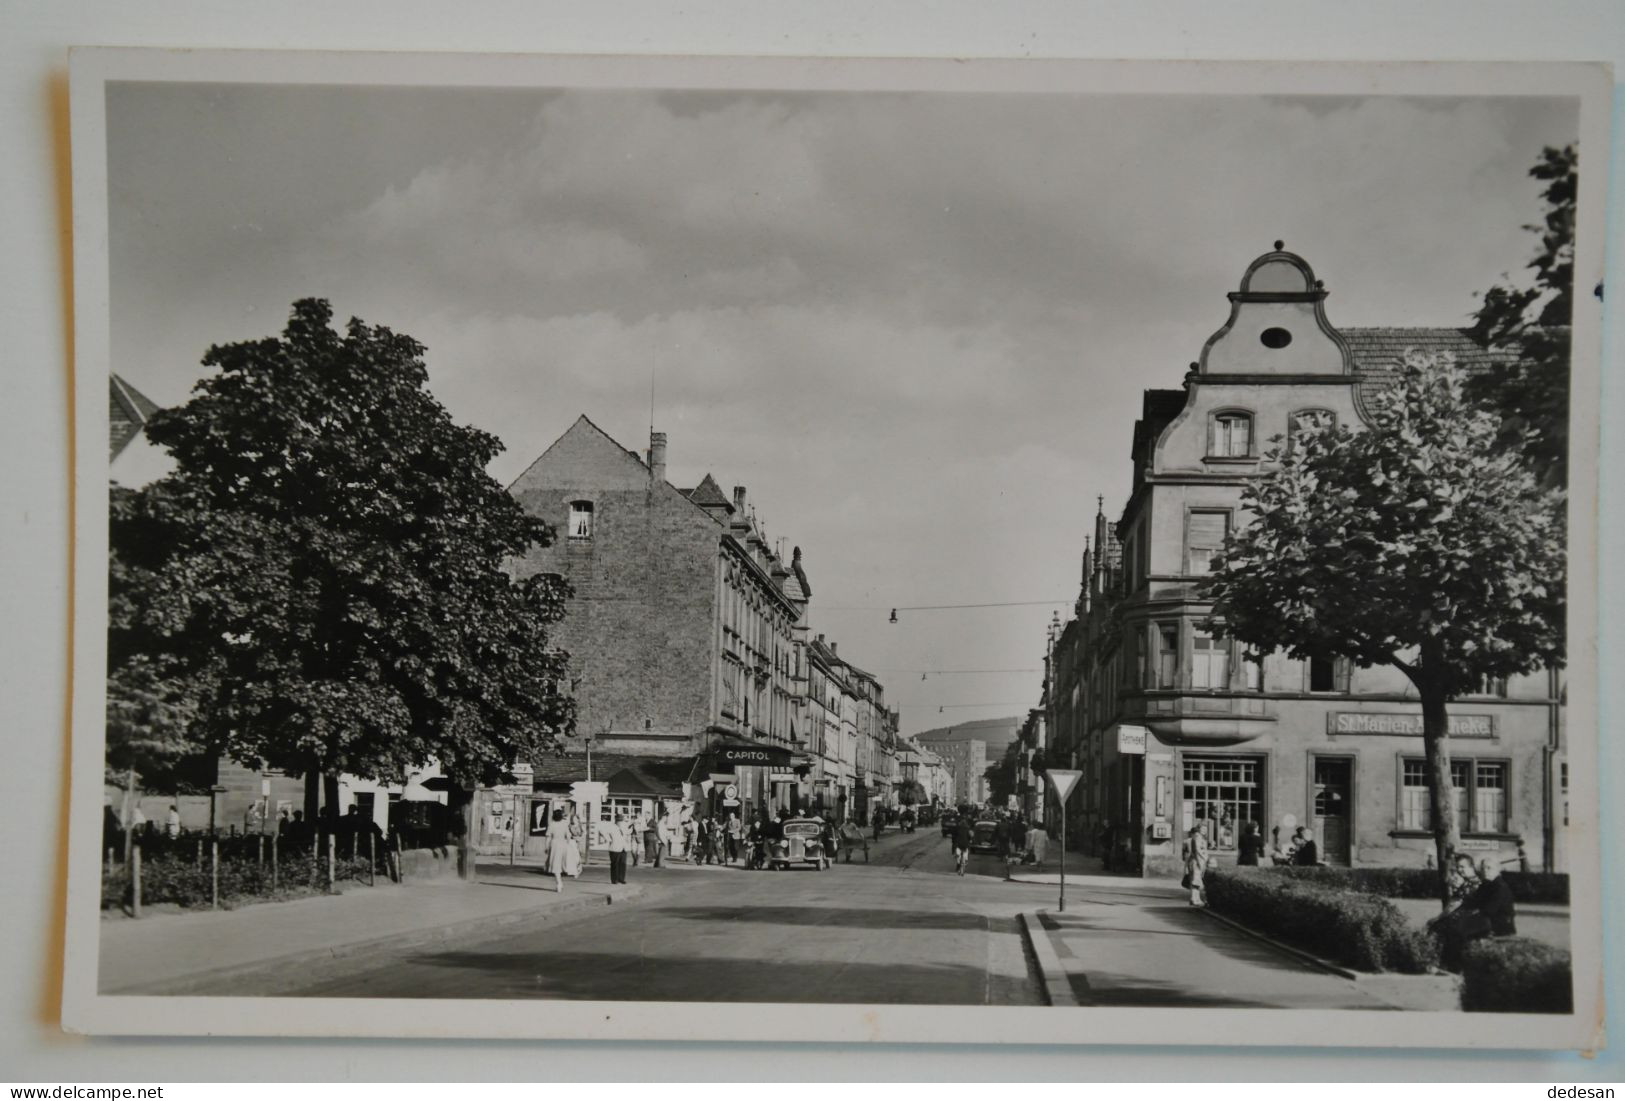 CPSM 1955 Rud Kaiserlautern Breischedstrasse -  CHA02 - Kaiserslautern